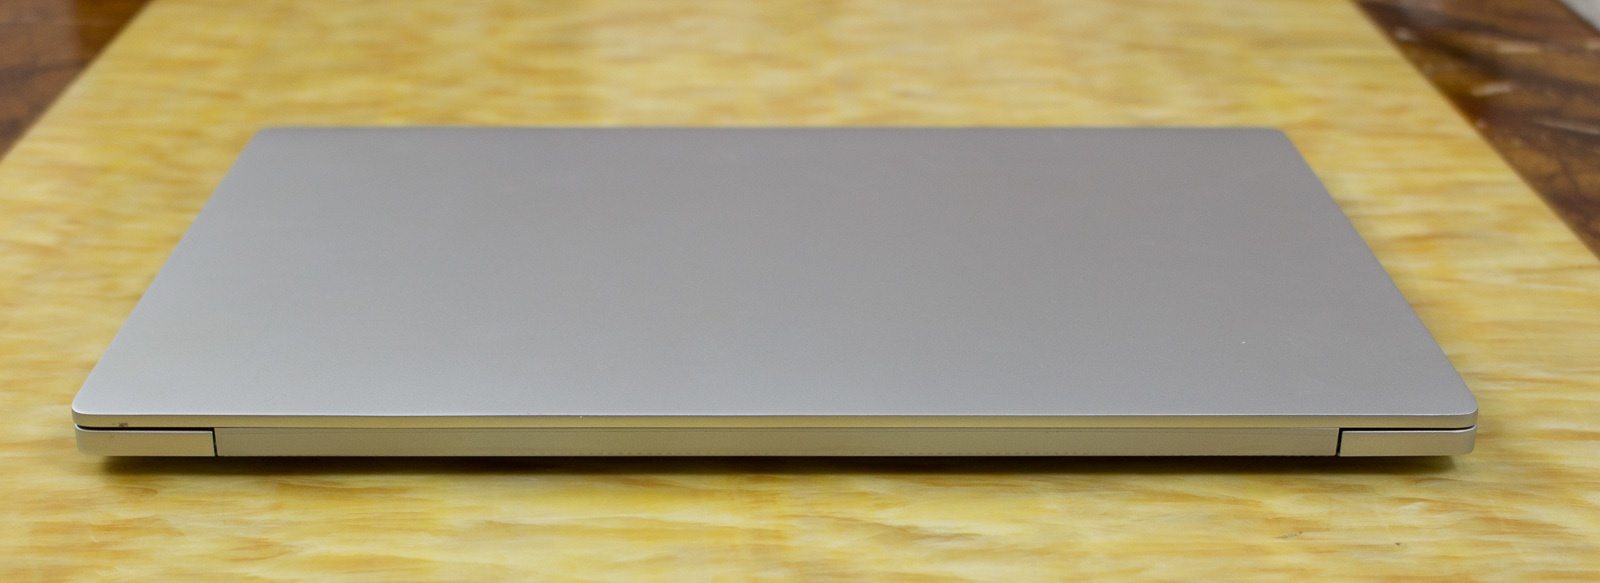 Xiaomi Mi Air 13 Laptop — еще один отличный китайский ноутбук, совершенно непохожий на Macbook - 7